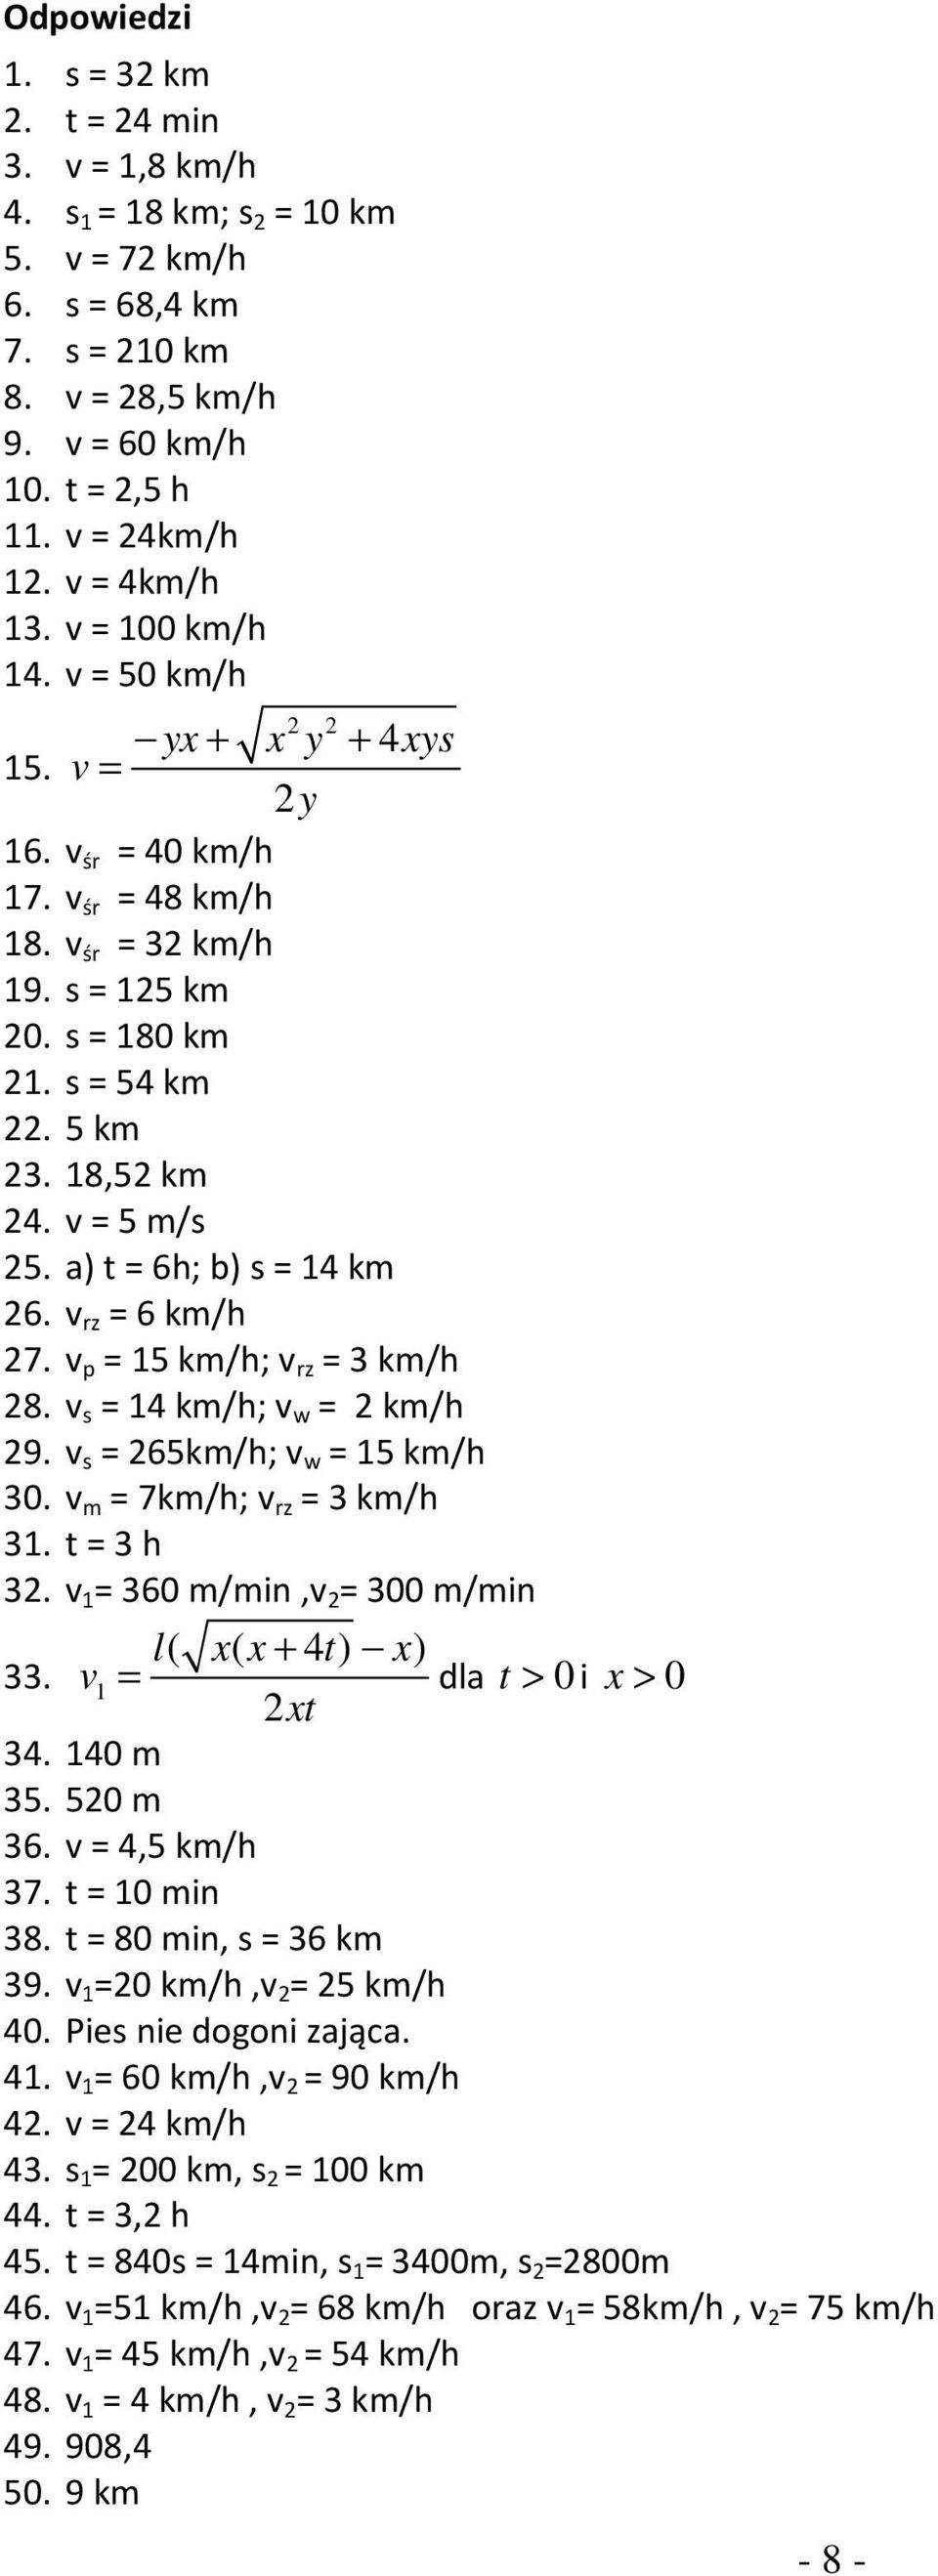 a) t = 6h; b) = 14 km 26. v rz = 6 km/h 27. v p = 15 km/h; v rz = 3 km/h 28. v = 14 km/h; v w = 2 km/h 29. v = 265km/h; v w = 15 km/h 30. v m = 7km/h; v rz = 3 km/h 31. t = 3 h 32.